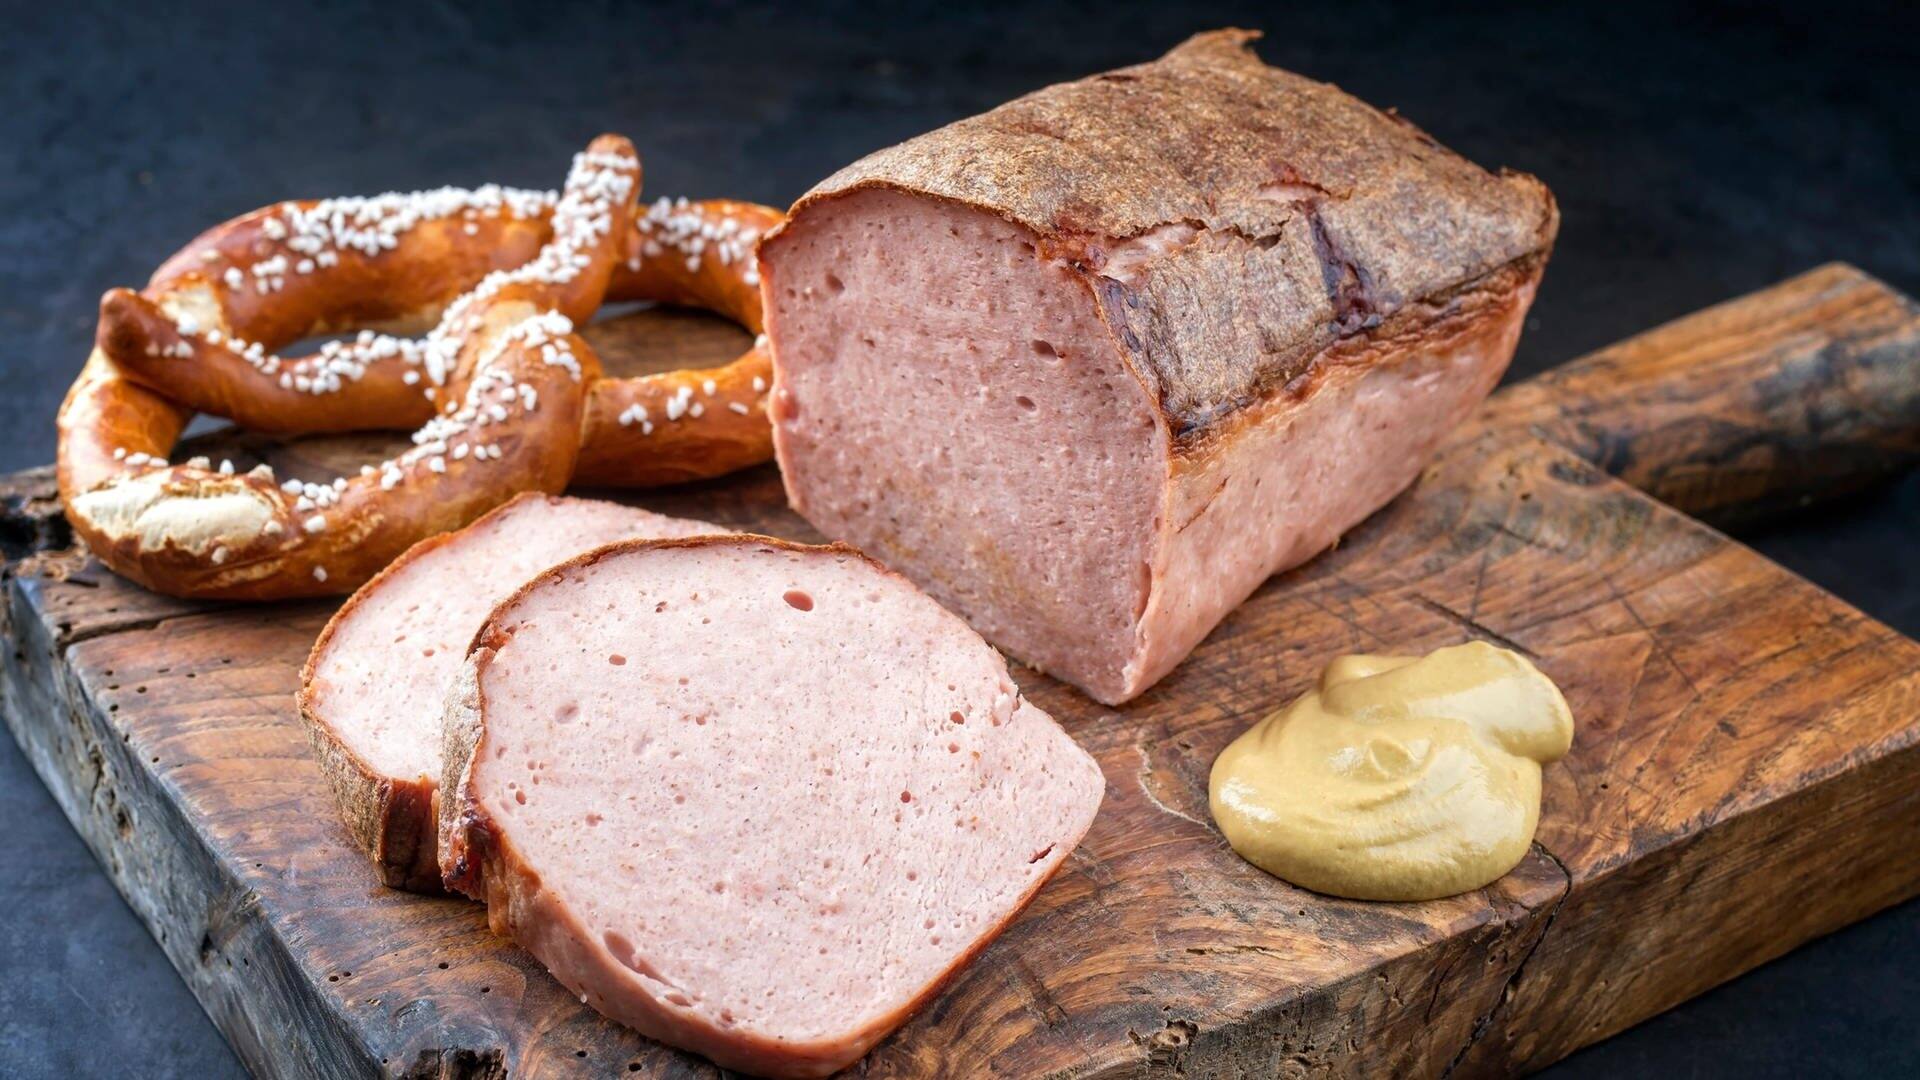 Fleischkäse liebt aufgeschnitten auf einem Brett mit Senf und bayerischen Brezeln – der Begriff Fleischkäse gehört wohl in die Kategorie „widersprüchliche deutsche Wörter“. Was denn nun: Fleisch oder Käse? (Foto: Adobe Stock, HLPhoto)